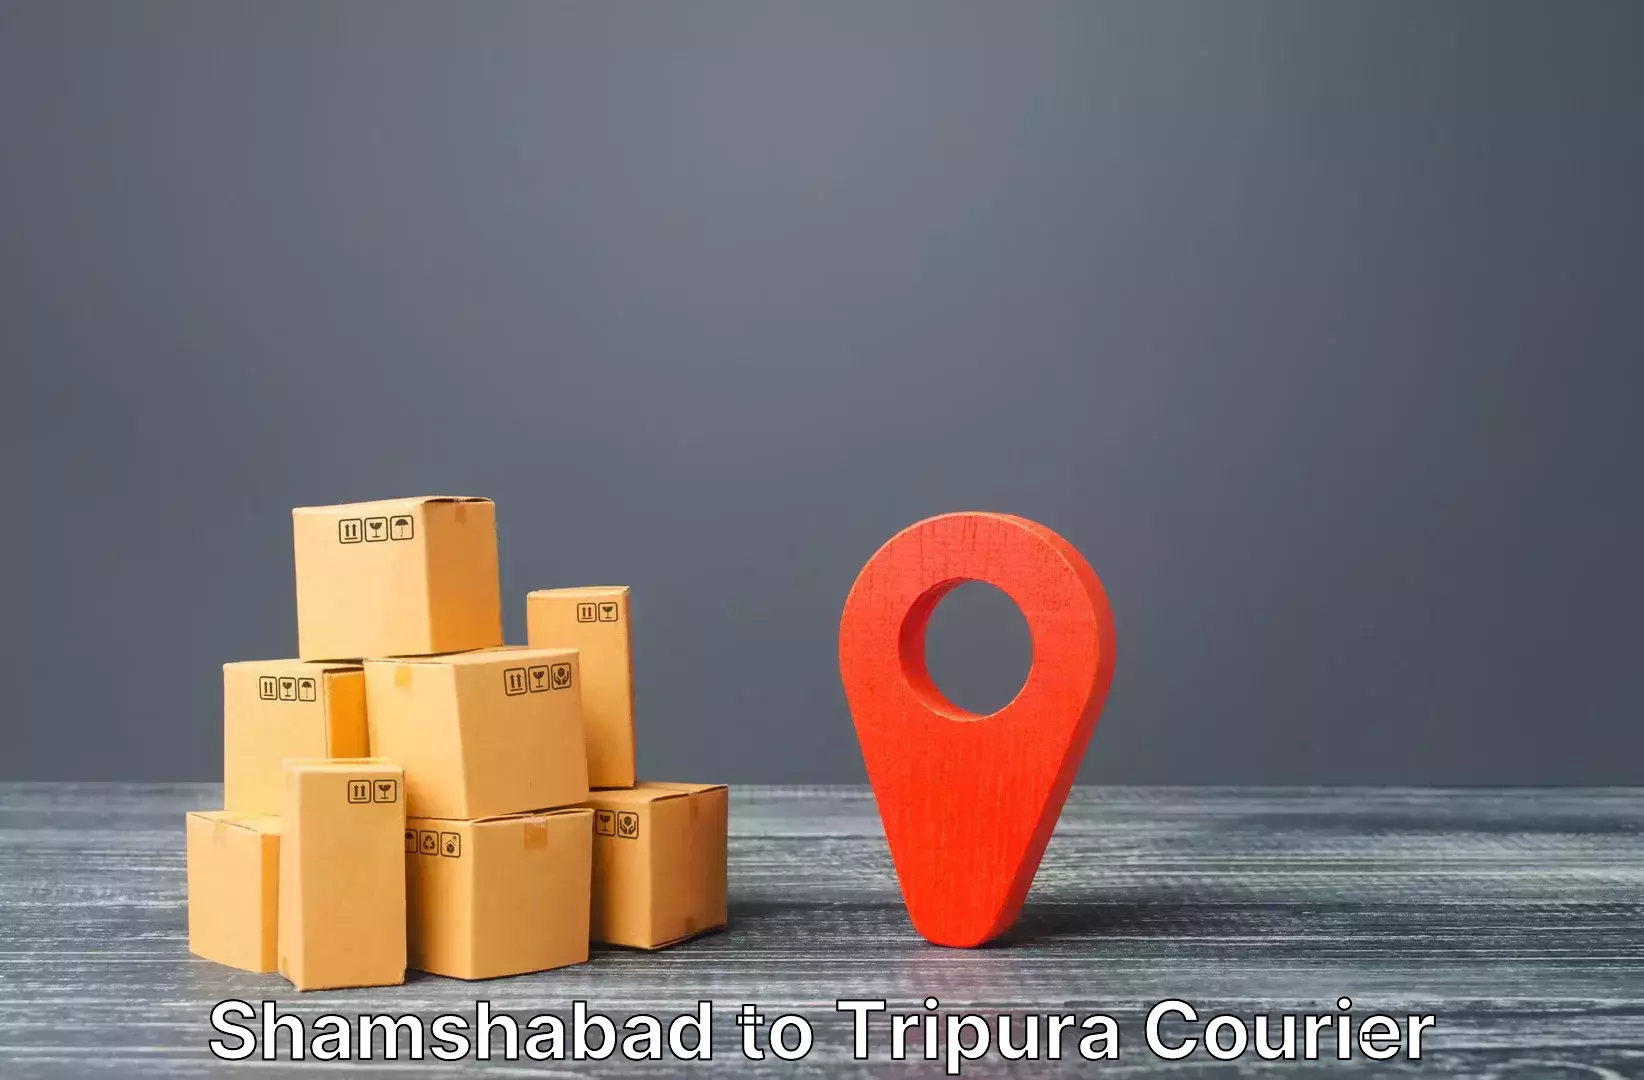 Luggage shipping strategy Shamshabad to Udaipur Tripura